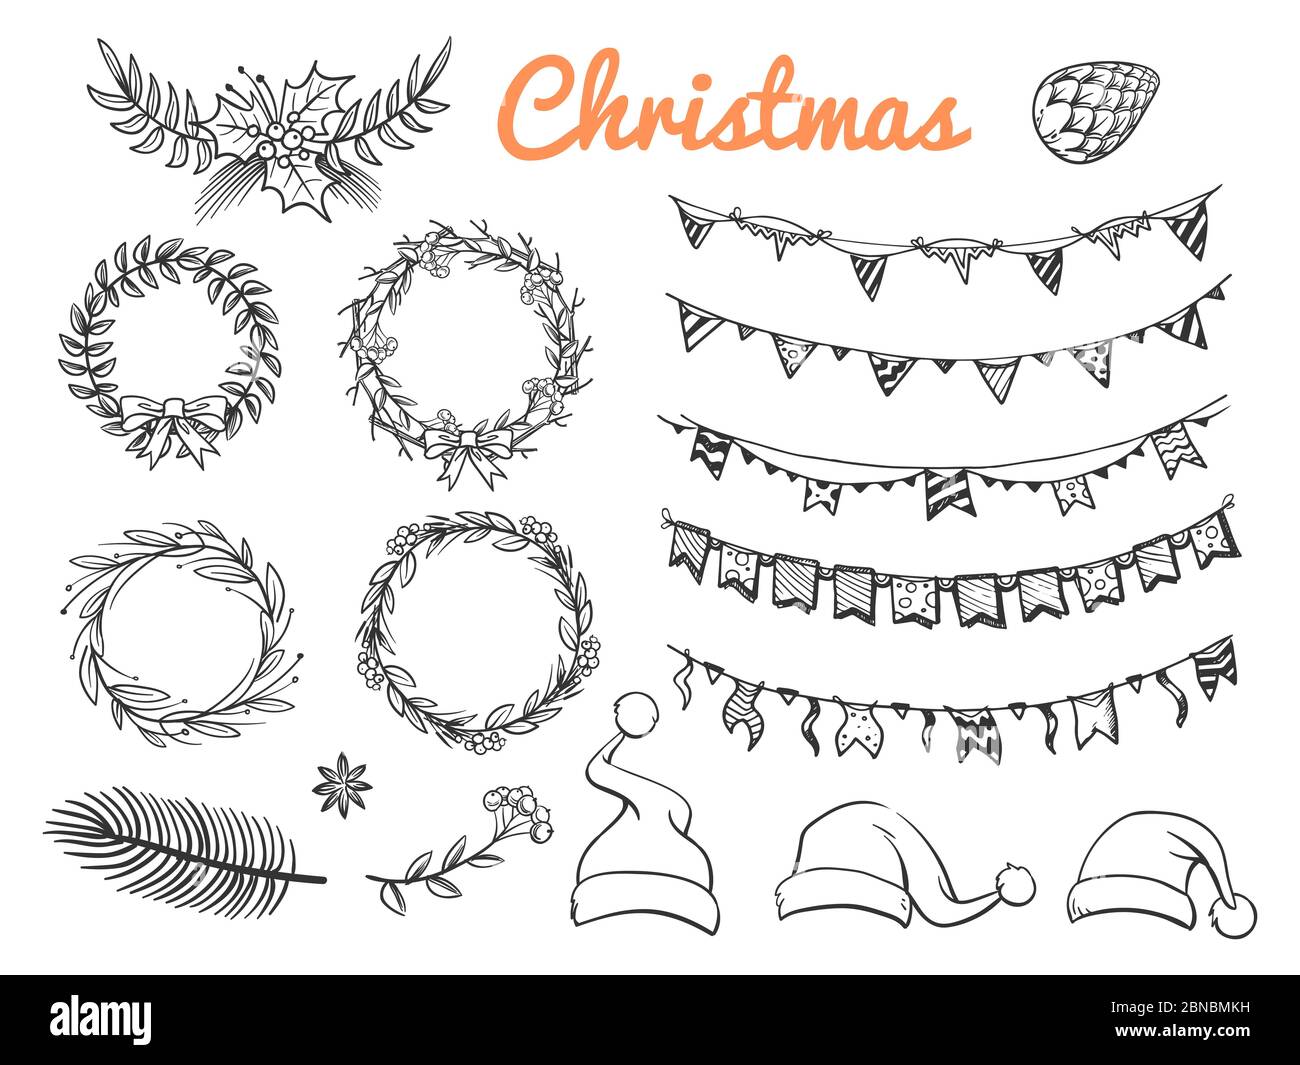 Große Skizze Weihnachtssymbole Vektorelemente isoliert auf weißem Hintergrund. Illustration von Skizze weihnachtsfeiertag, Weihnachtsfeier Stock Vektor